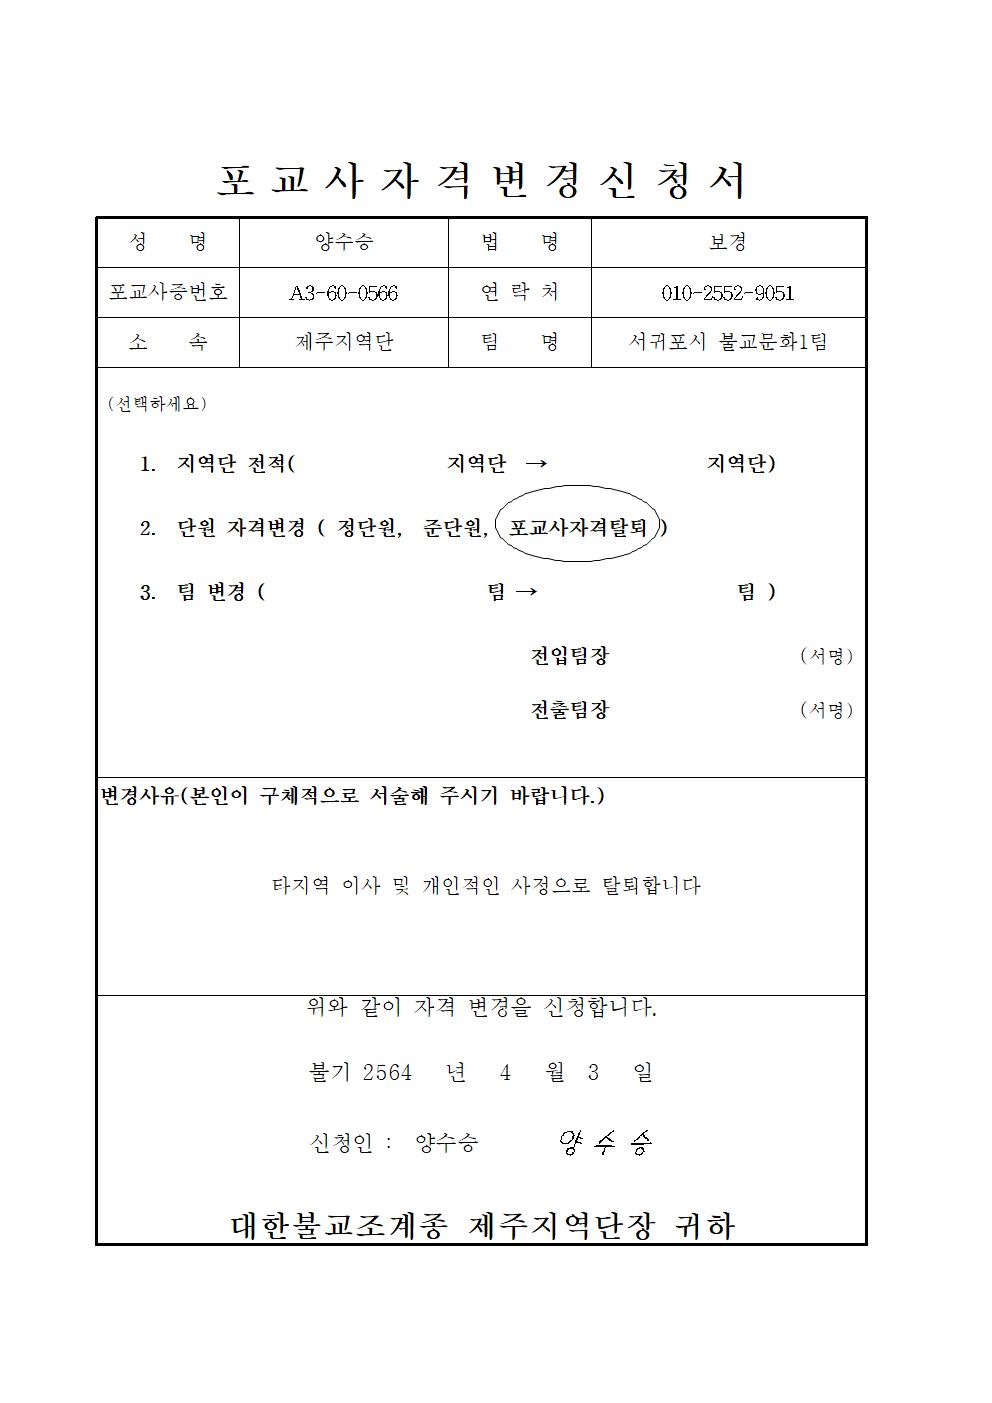 2020-제주11포교사변경신청(양수승).jpg